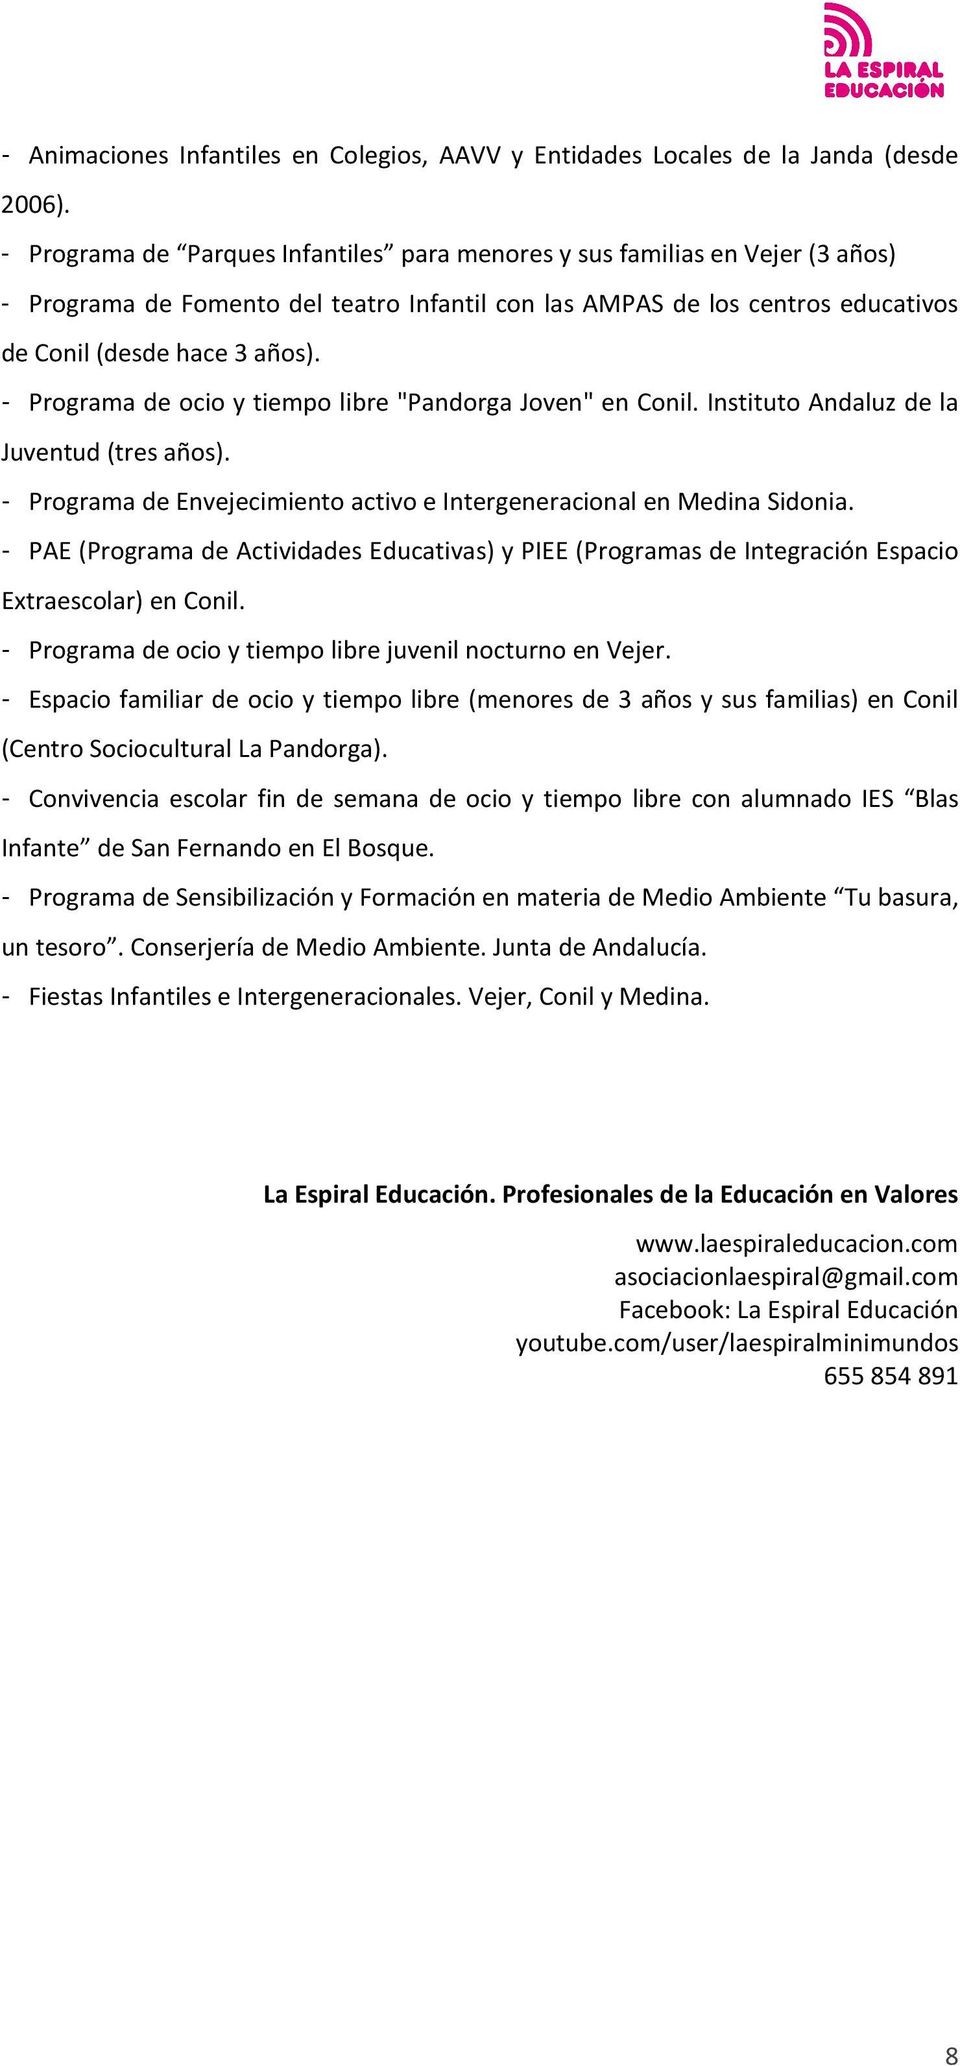 - Programa de ocio y tiempo libre "Pandorga Joven" en Conil. Instituto Andaluz de la Juventud (tres años). - Programa de Envejecimiento activo e Intergeneracional en Medina Sidonia.